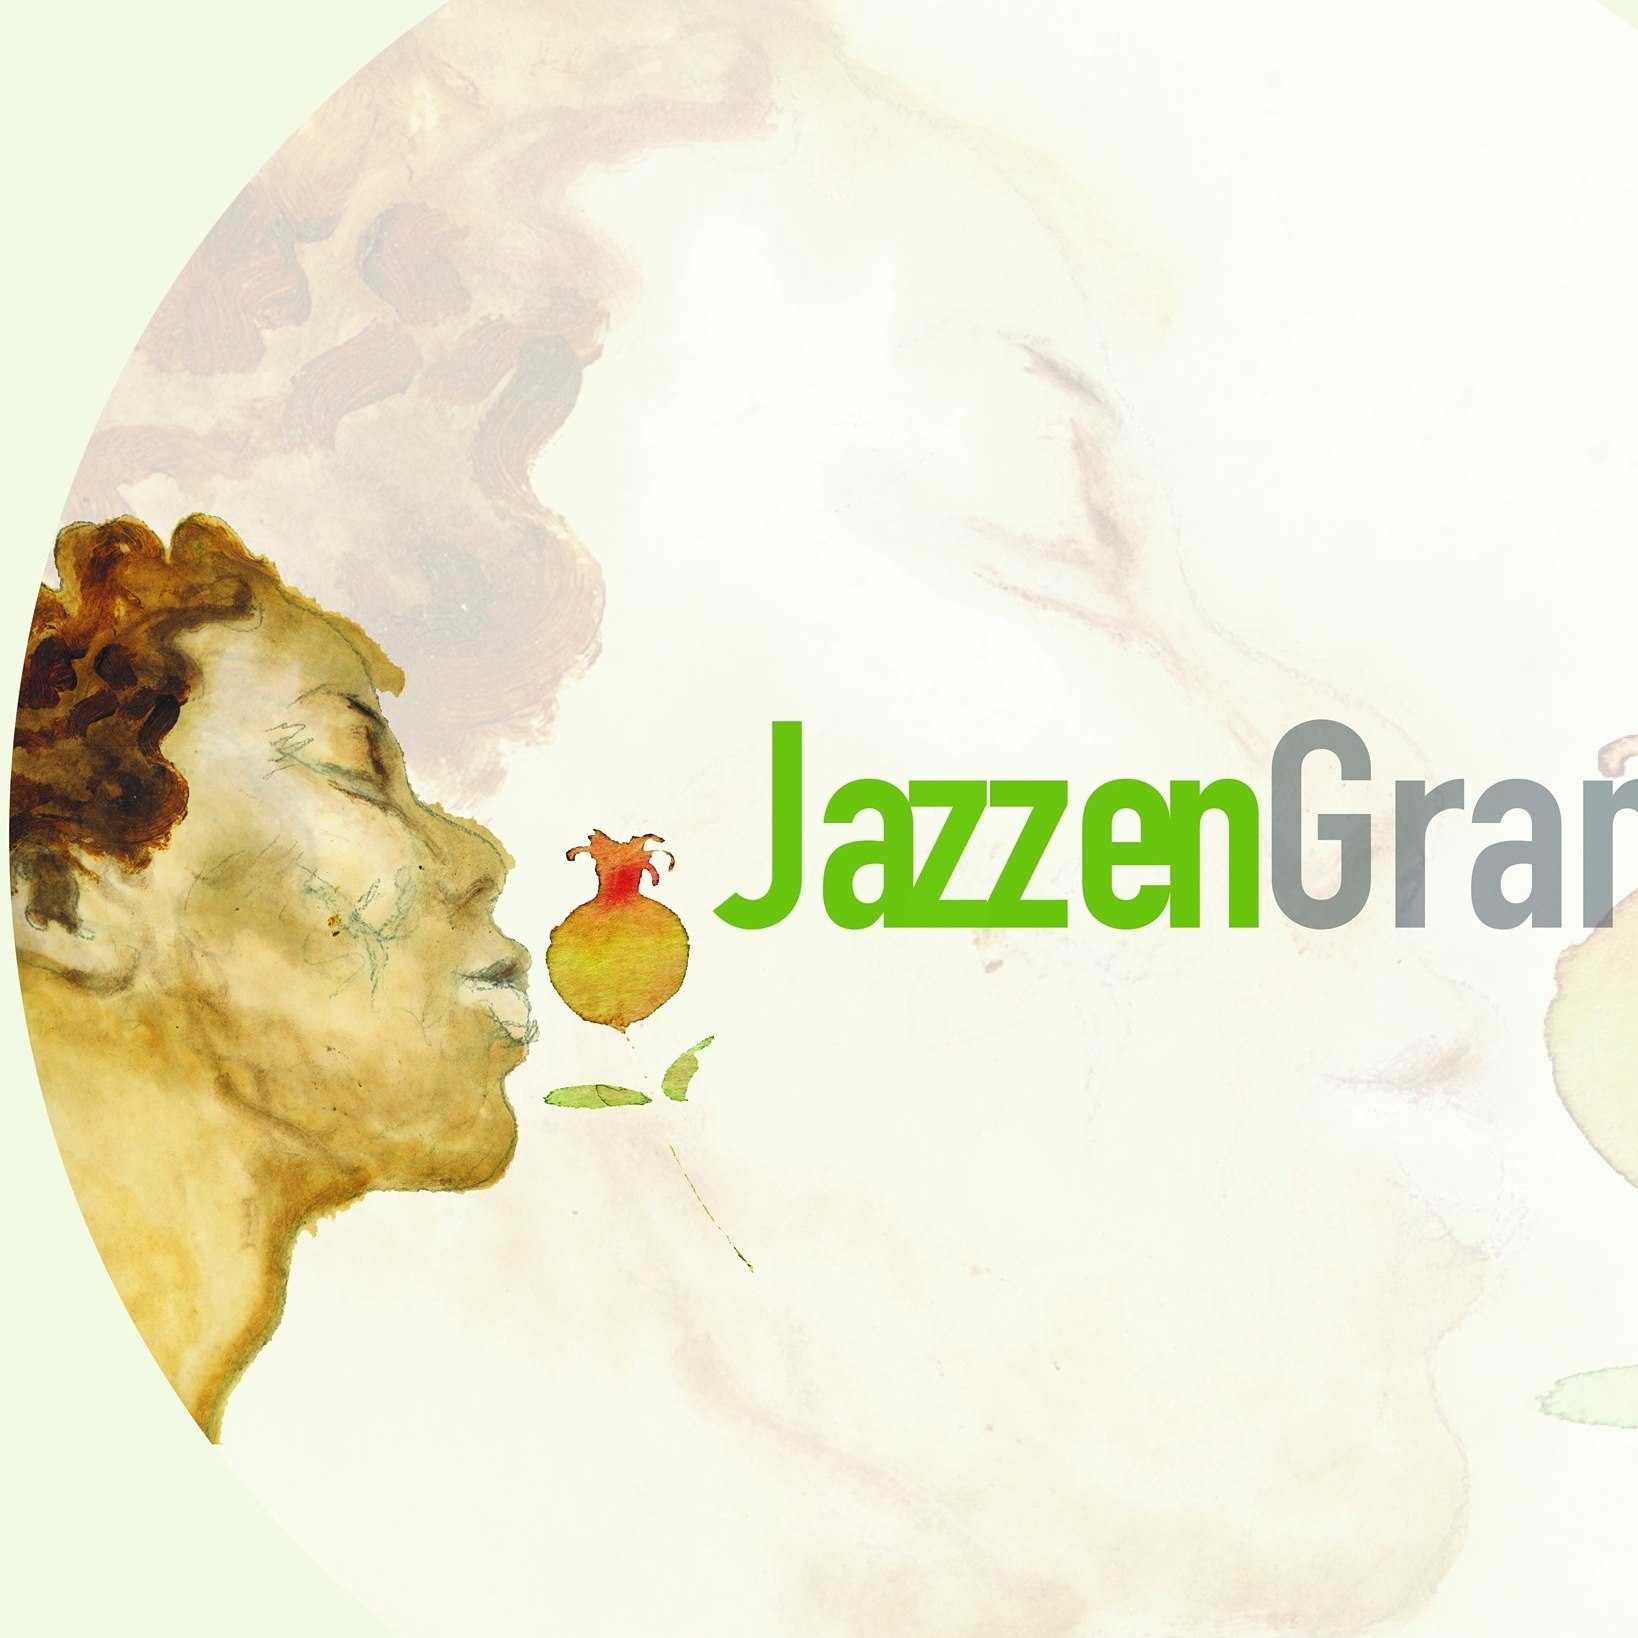 Festival Internacional de Jazz de Granada